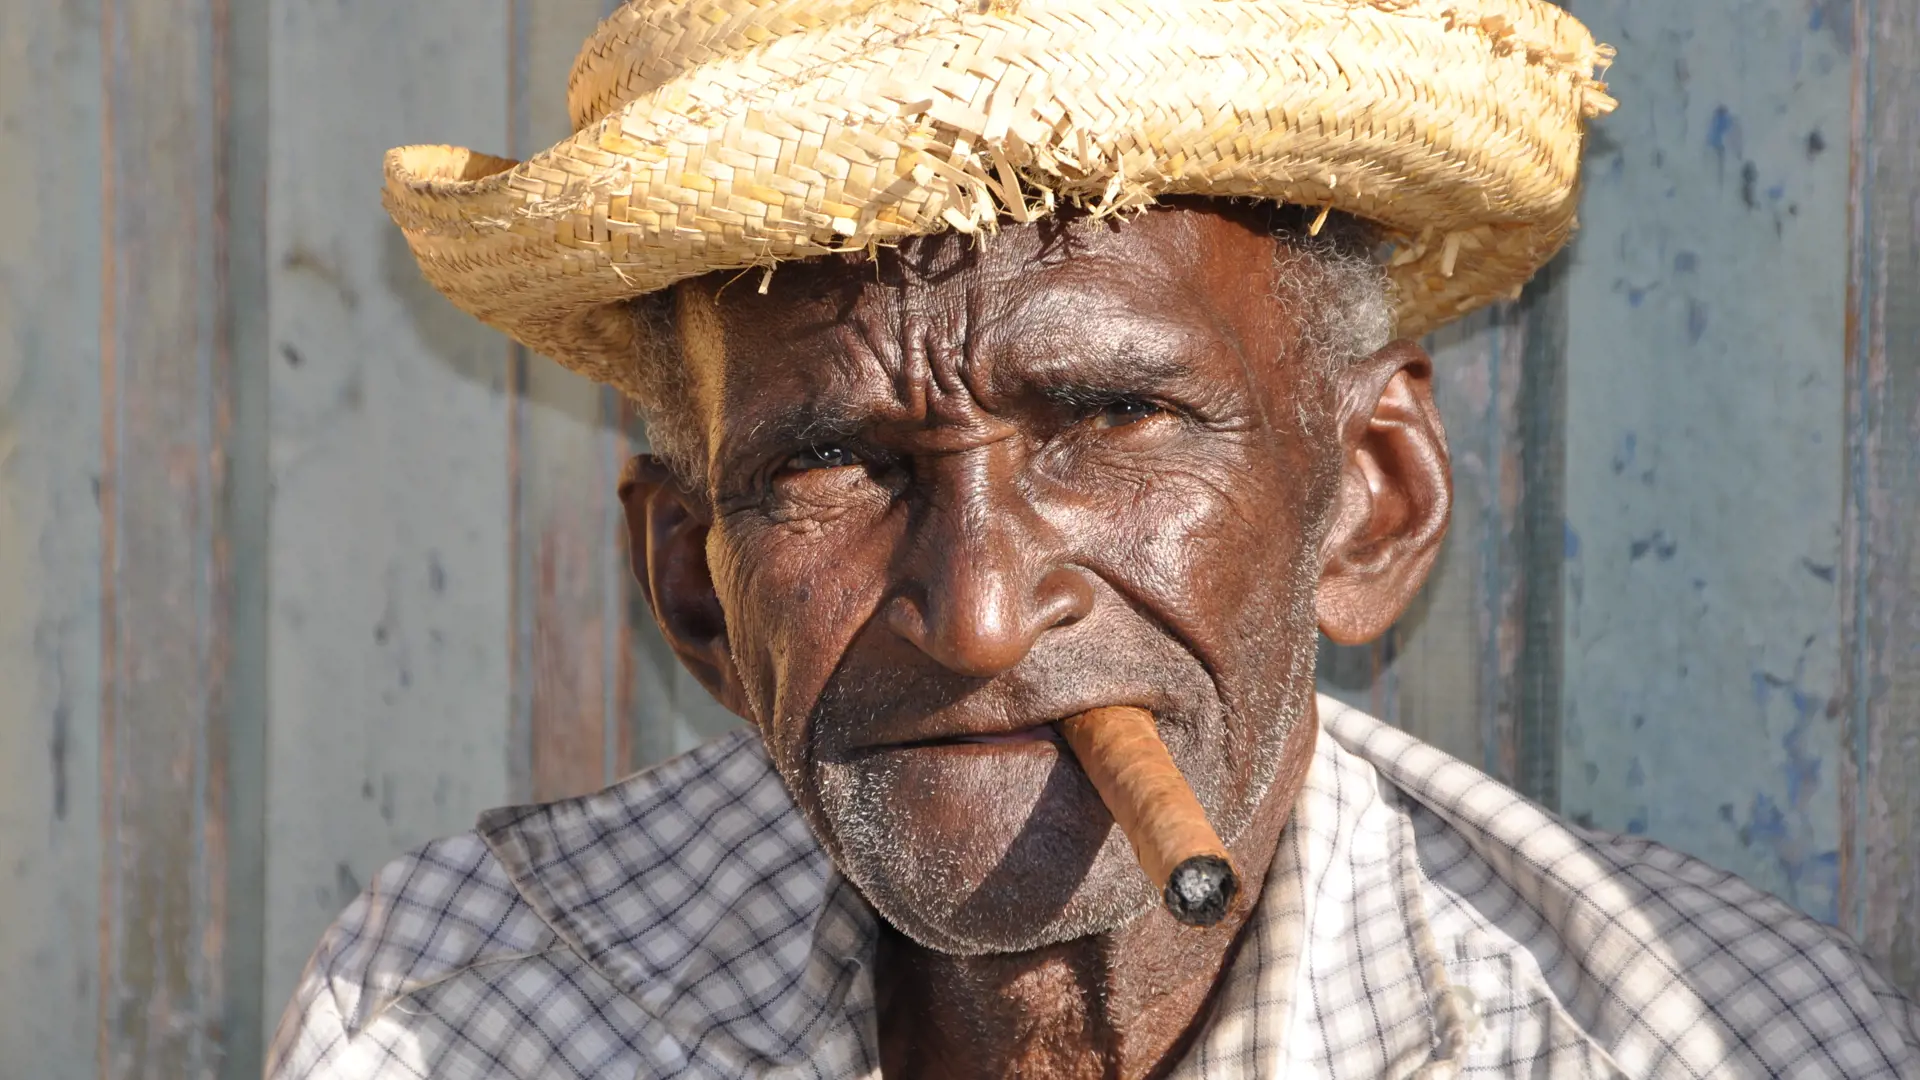 En rigtig cubaner med cigar og stråhat, Trinidad